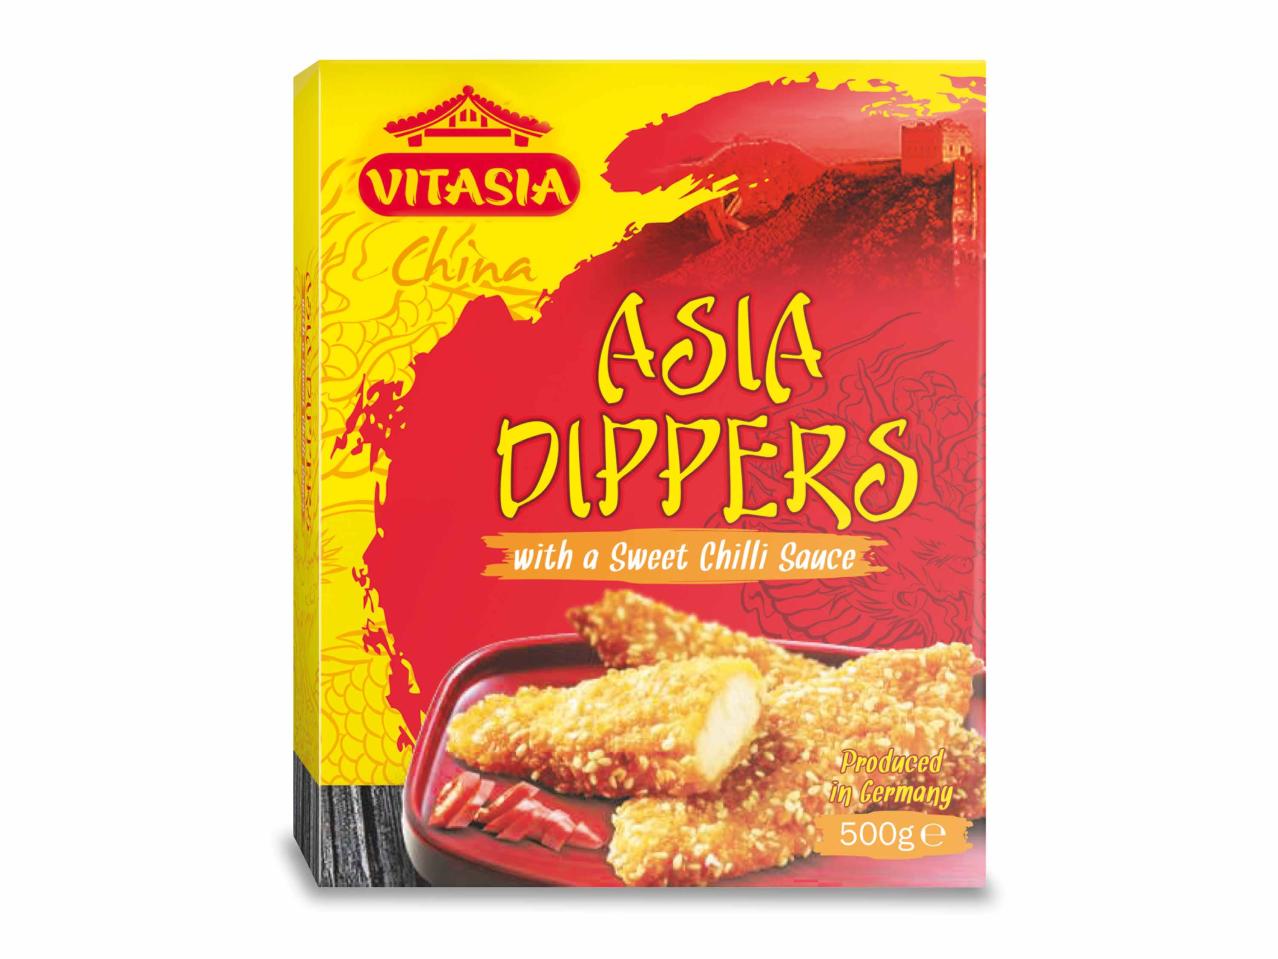 Dippers asiatici